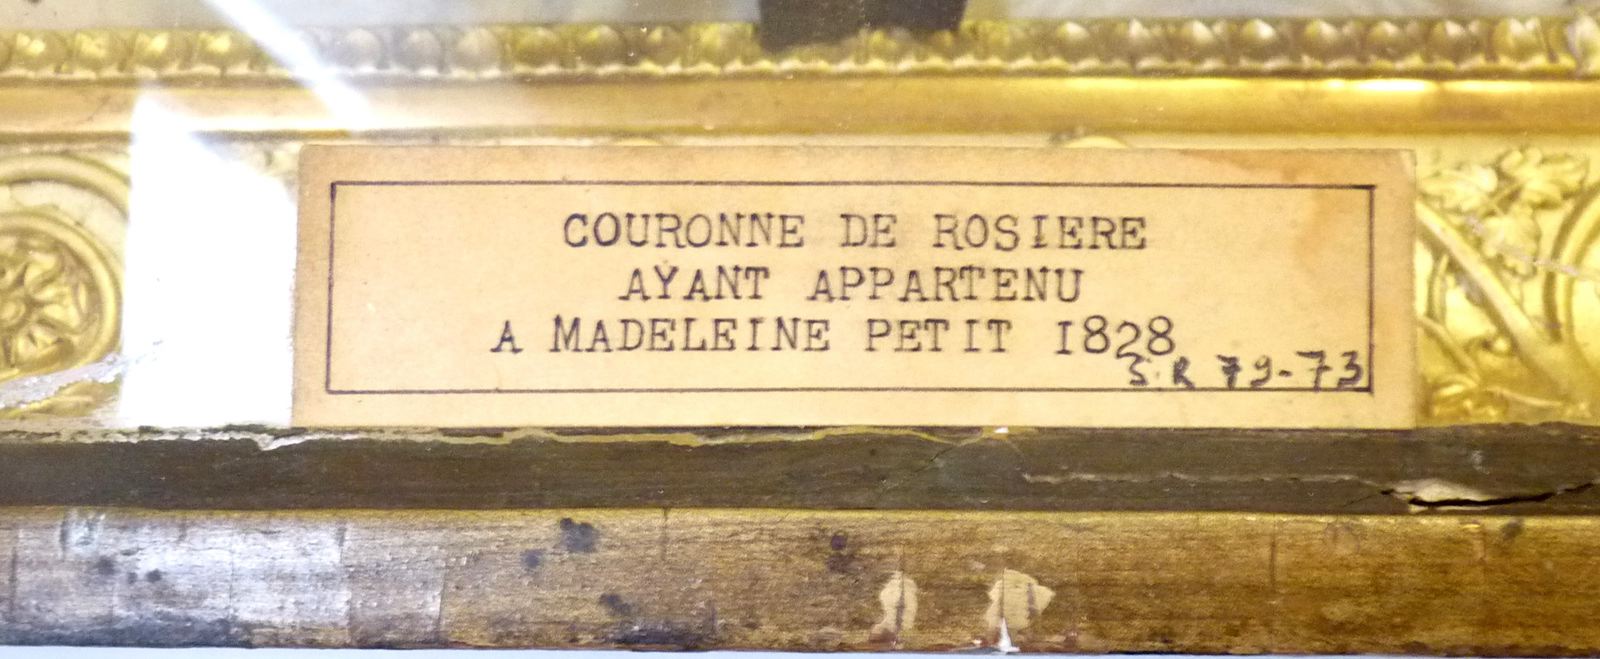 Couronne de rosière ayant appartenue à Madeleine Petit (1828)